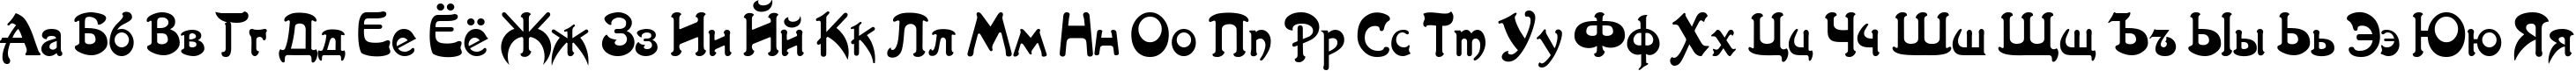 Пример написания русского алфавита шрифтом Artist-Nouveau